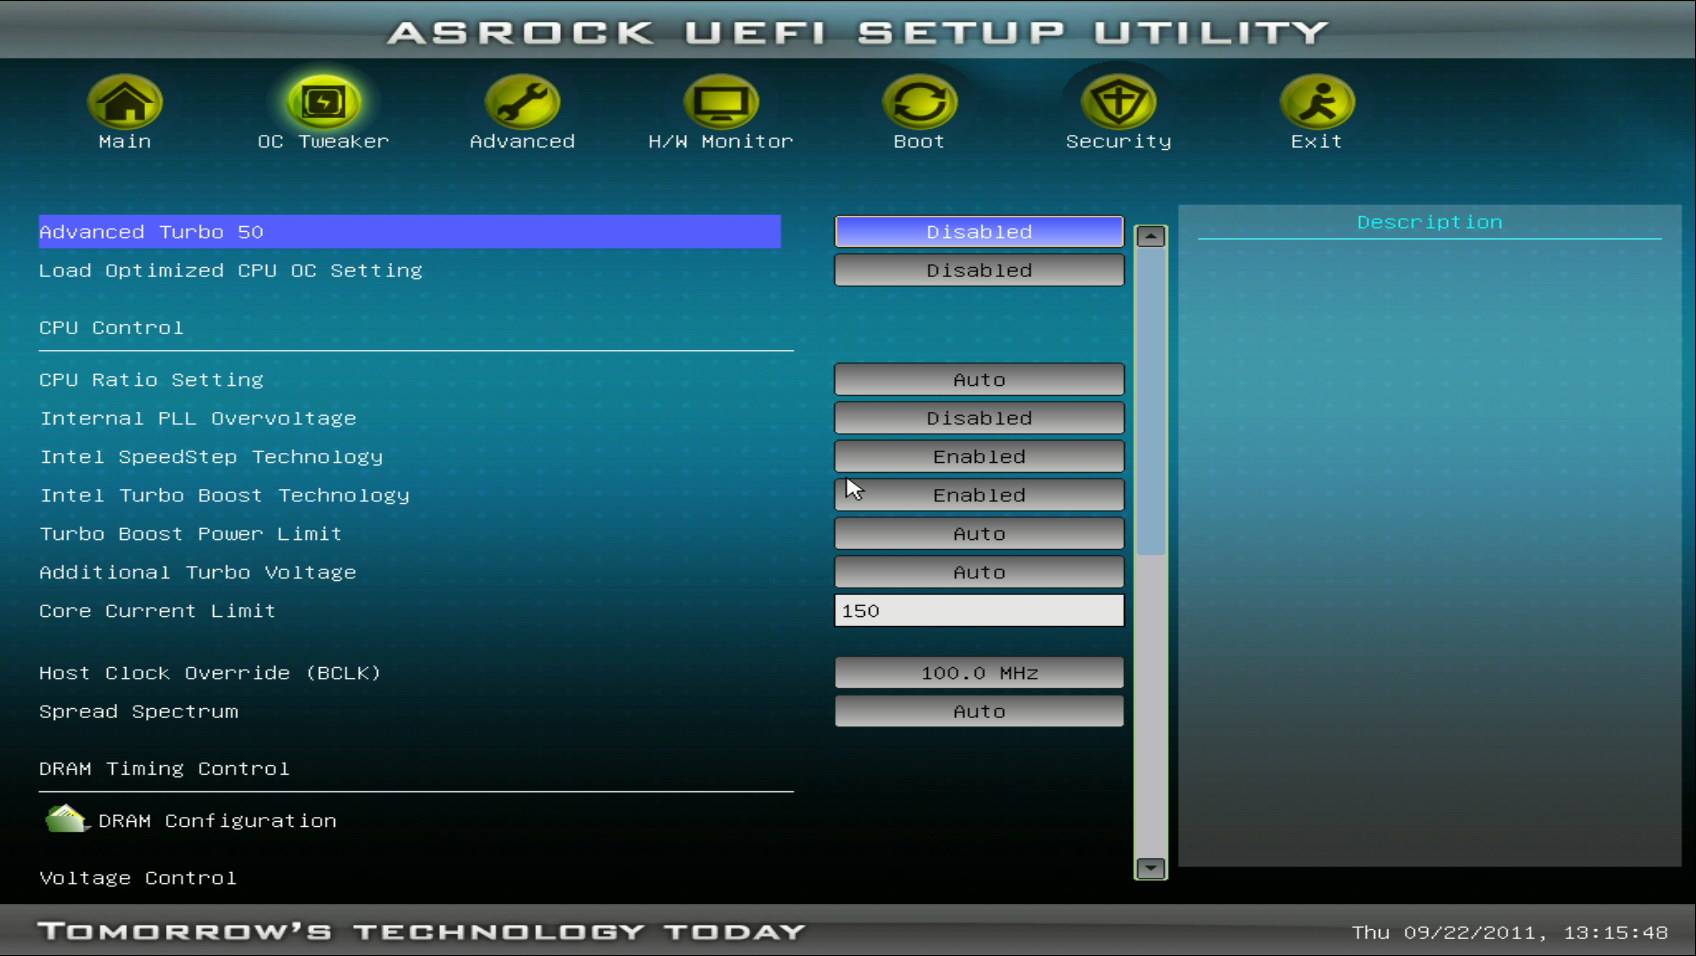 V-podrazdele-Advanced-Turbo-50-vystavlyaetsya-pokazatel-razgona-centralnogo-processora-i-operativnoj-pamyati-PK.jpg